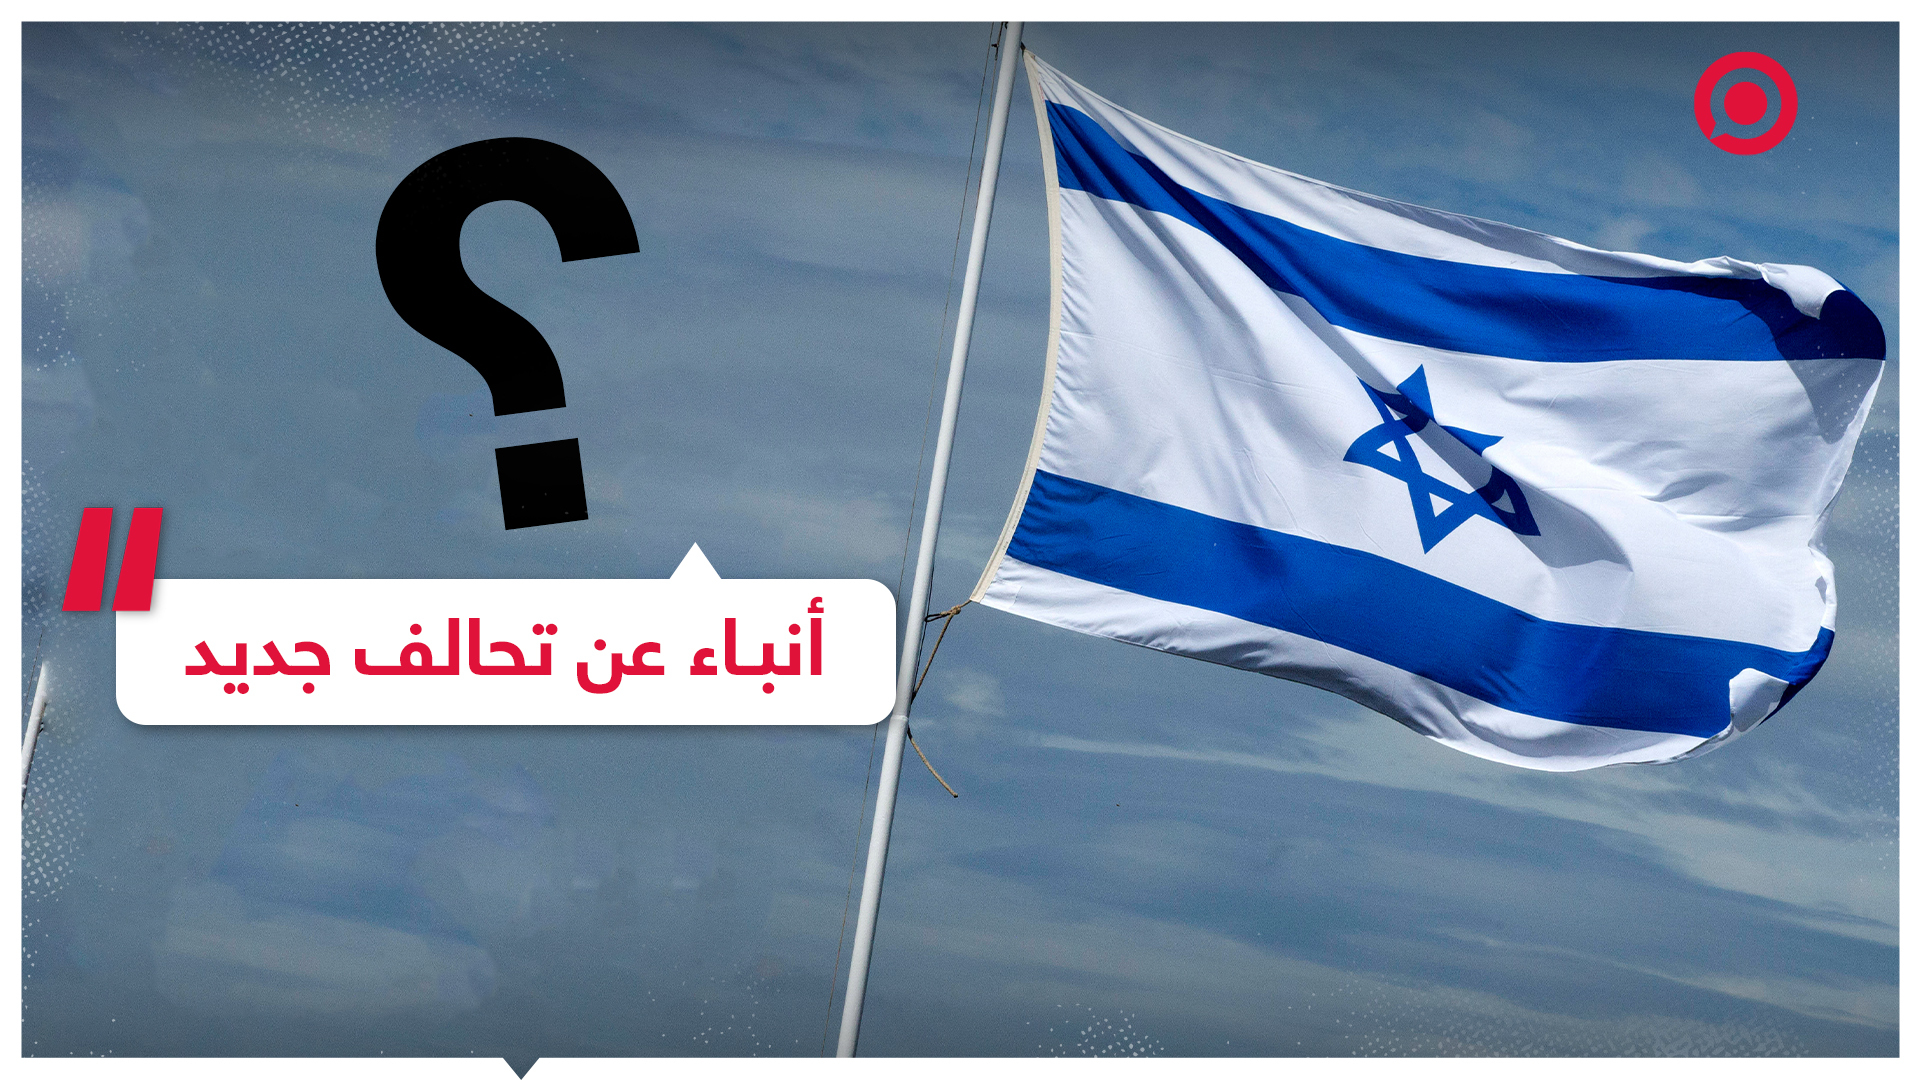 الإعلامي الإسرائيلي إيدي كوهين ينشر تغريدة بشأن أنباء عن تحالف جديد